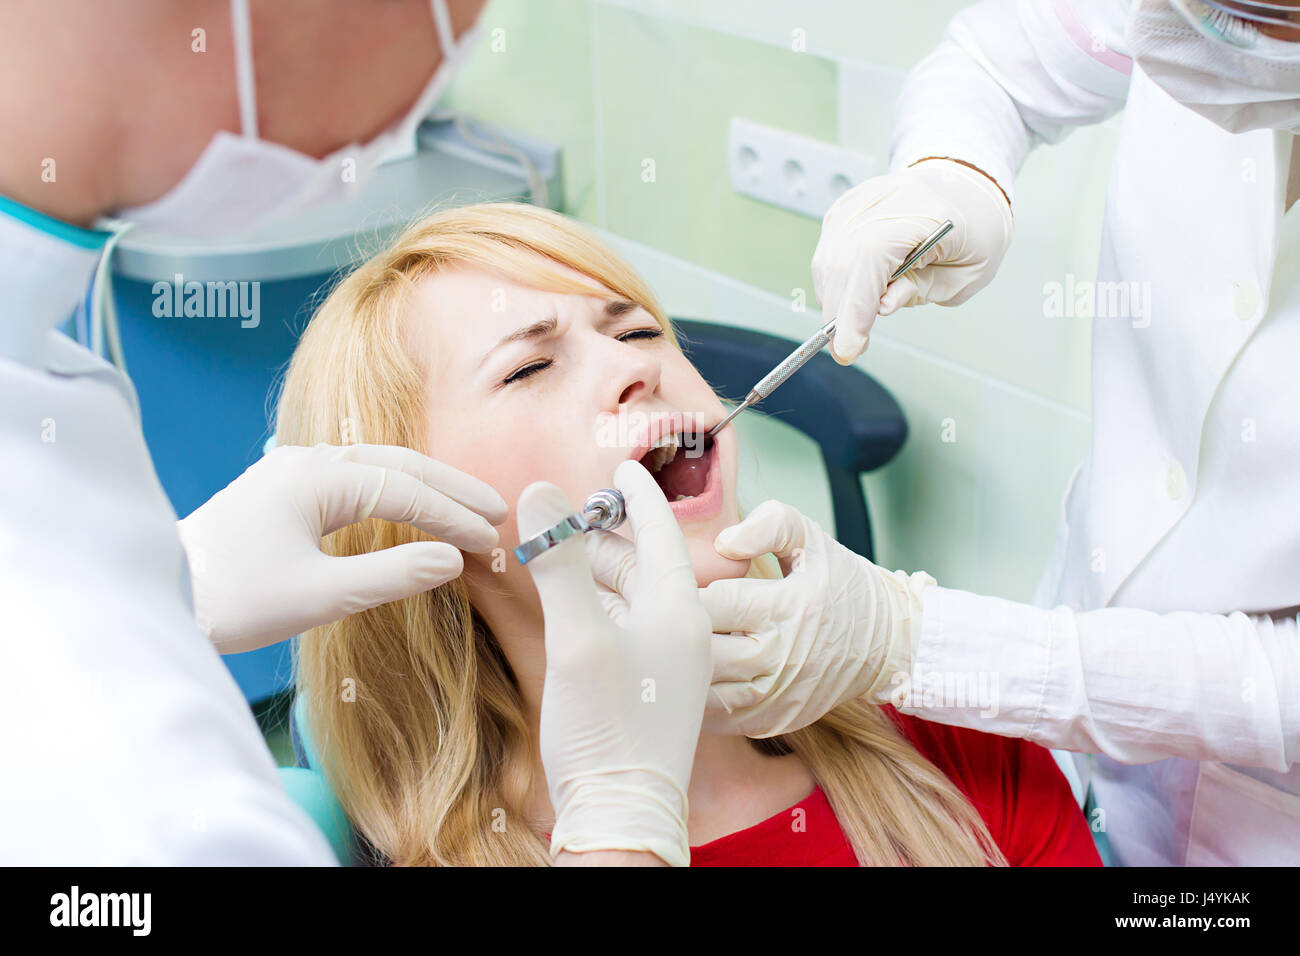 Боюсь анестезии. Анестезия в стоматологии. Инъекционная анестезия. Девушка стоматолог.